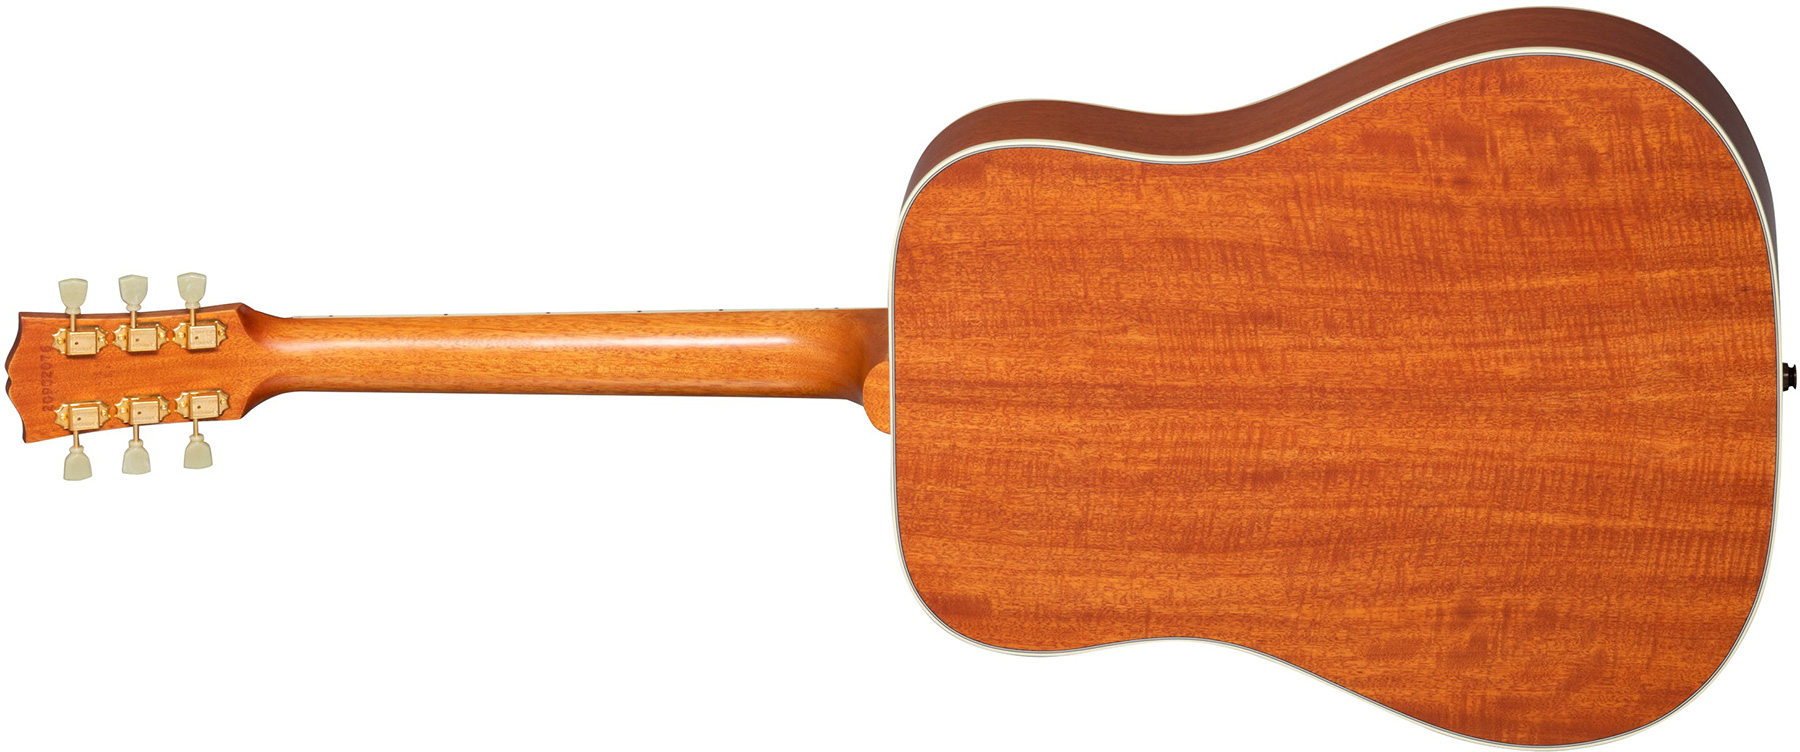 Gibson Hummingbird Faded Original Dreadnought Epicea Acajou Rw - Antique Natural - Guitarra acústica & electro - Variation 1